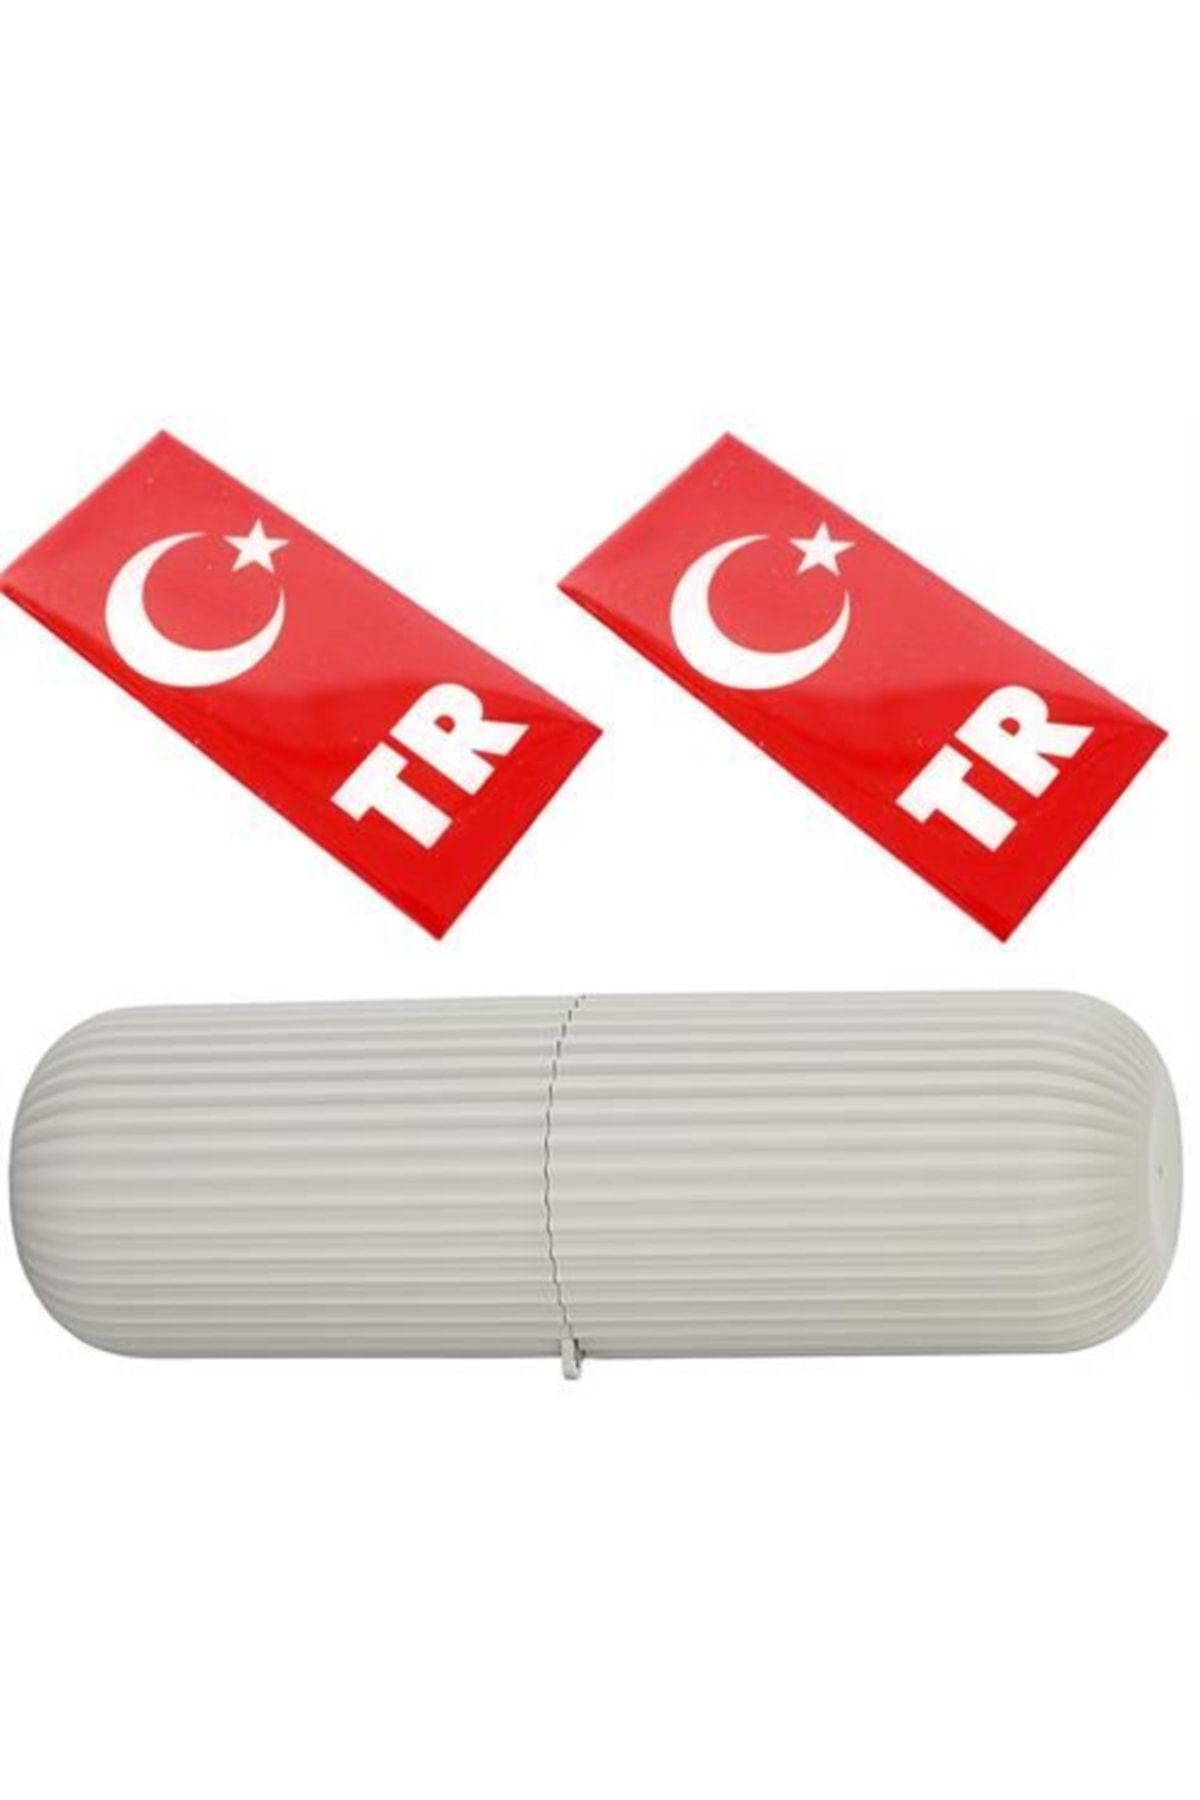 ModaCar Plaka Tr Damla Türk Bayrağı Organizer Box Seti 422182